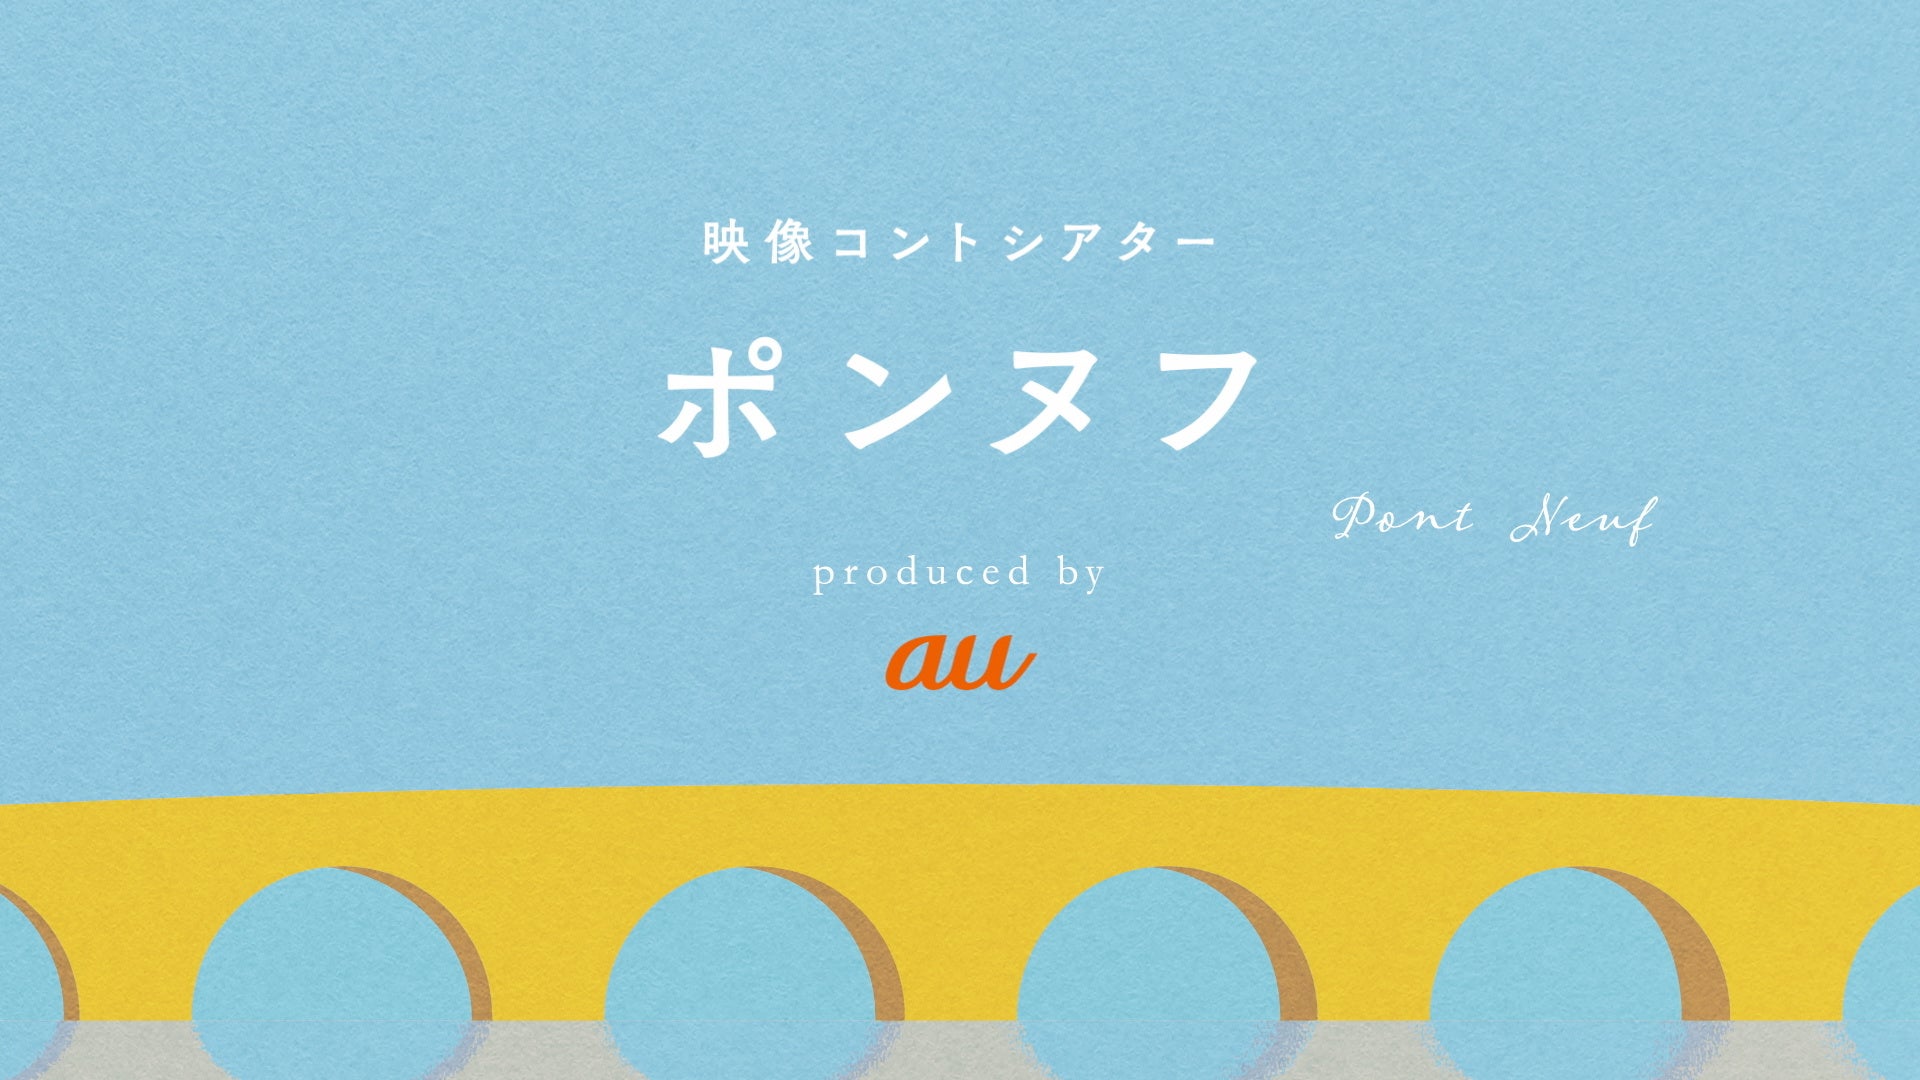 【TVアニメ「EDENS ZERO」】ASCA主題歌JKイラストを真島ヒロが描き下ろし！